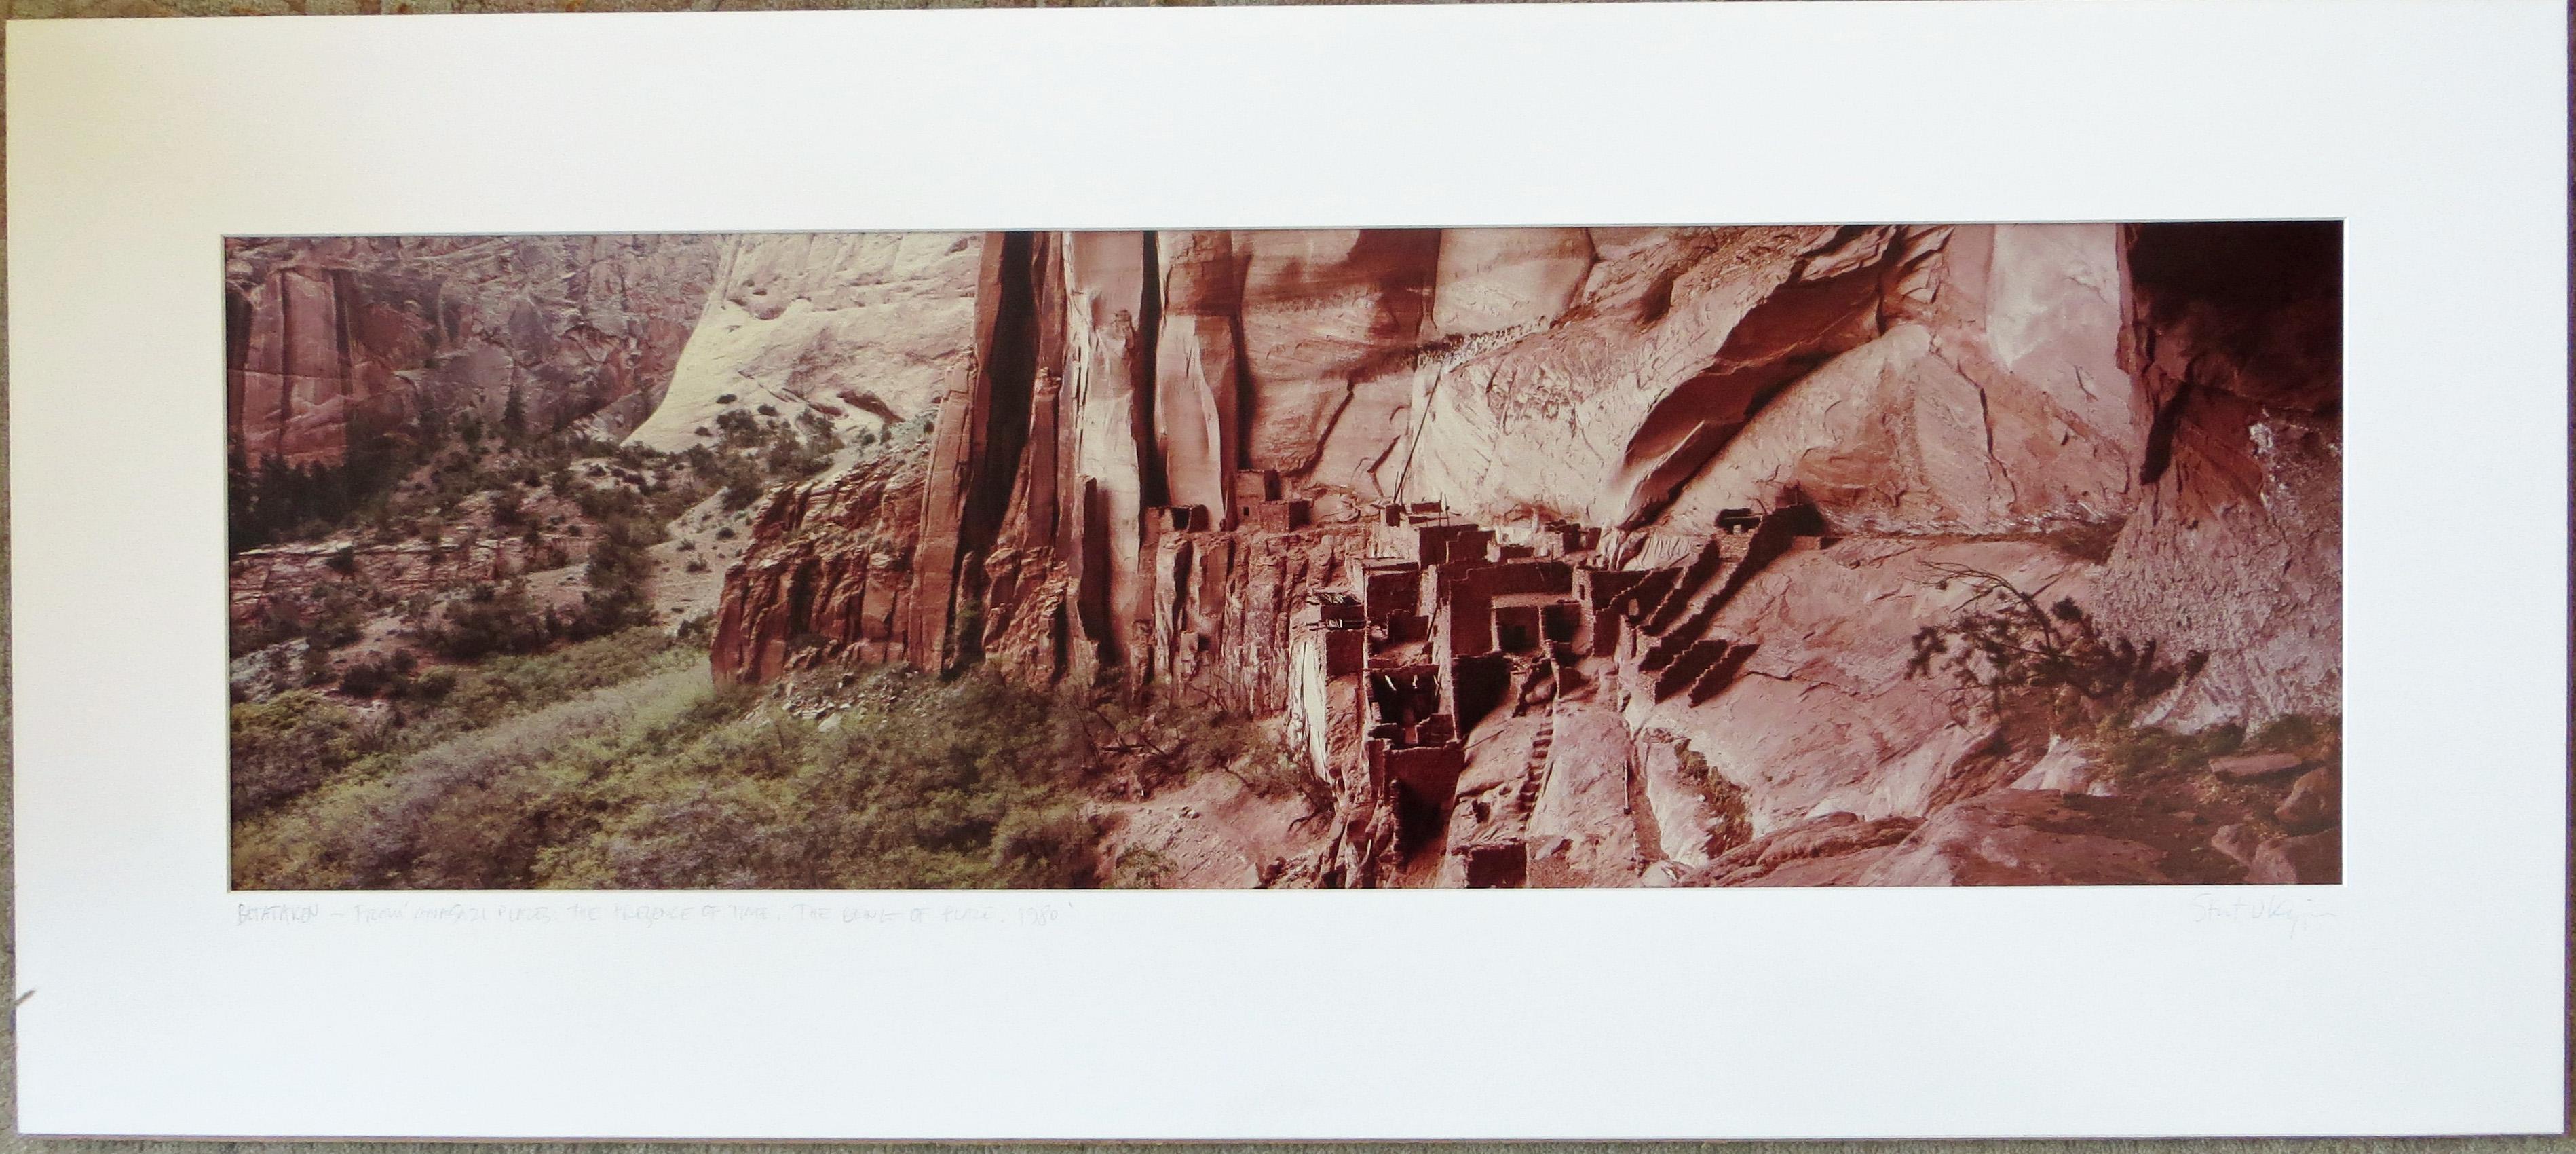 Betataken, Anasazi-Stätten, New Mexico (Naturalismus), Photograph, von Stuart Klipper